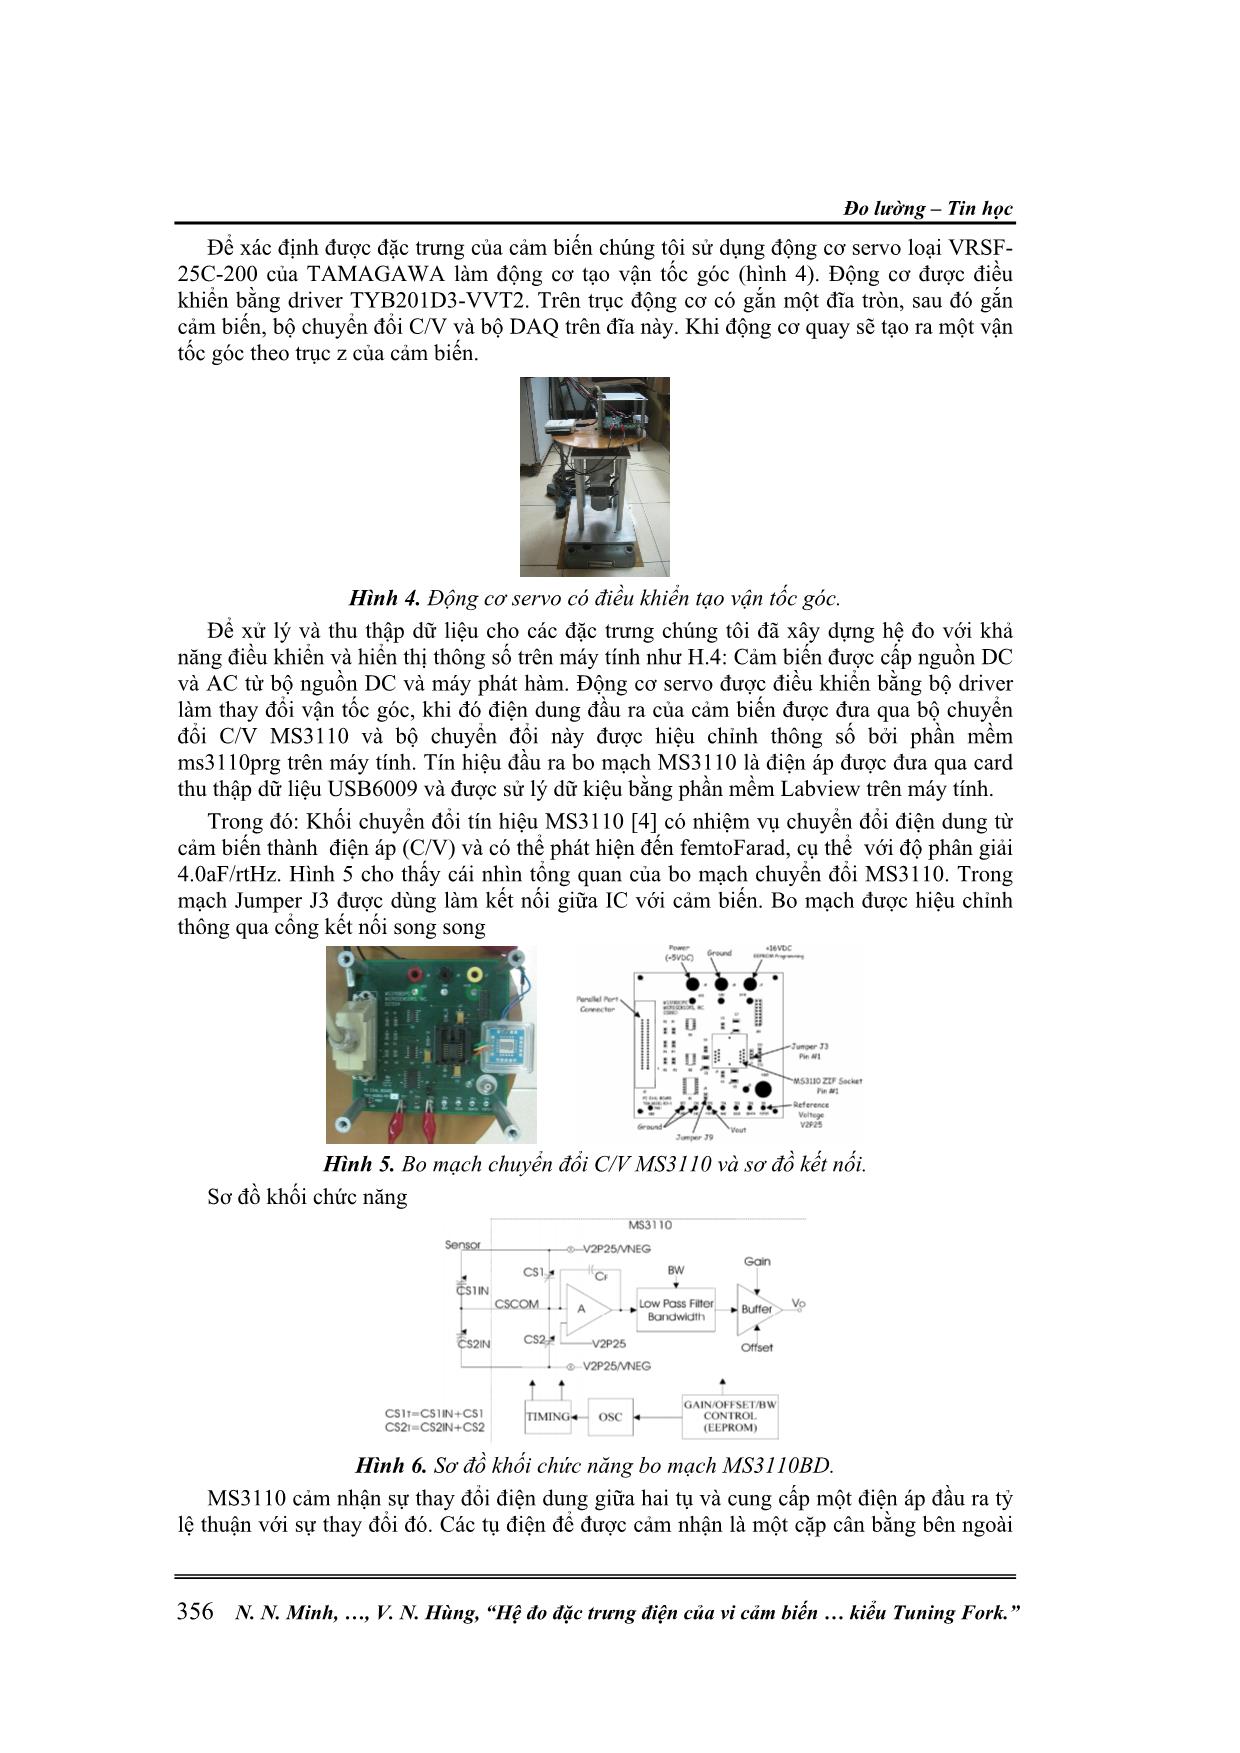 Hệ đo đặc trưng điện của vi cảm biến vận tốc góc kiểu Tuning Fork trang 3